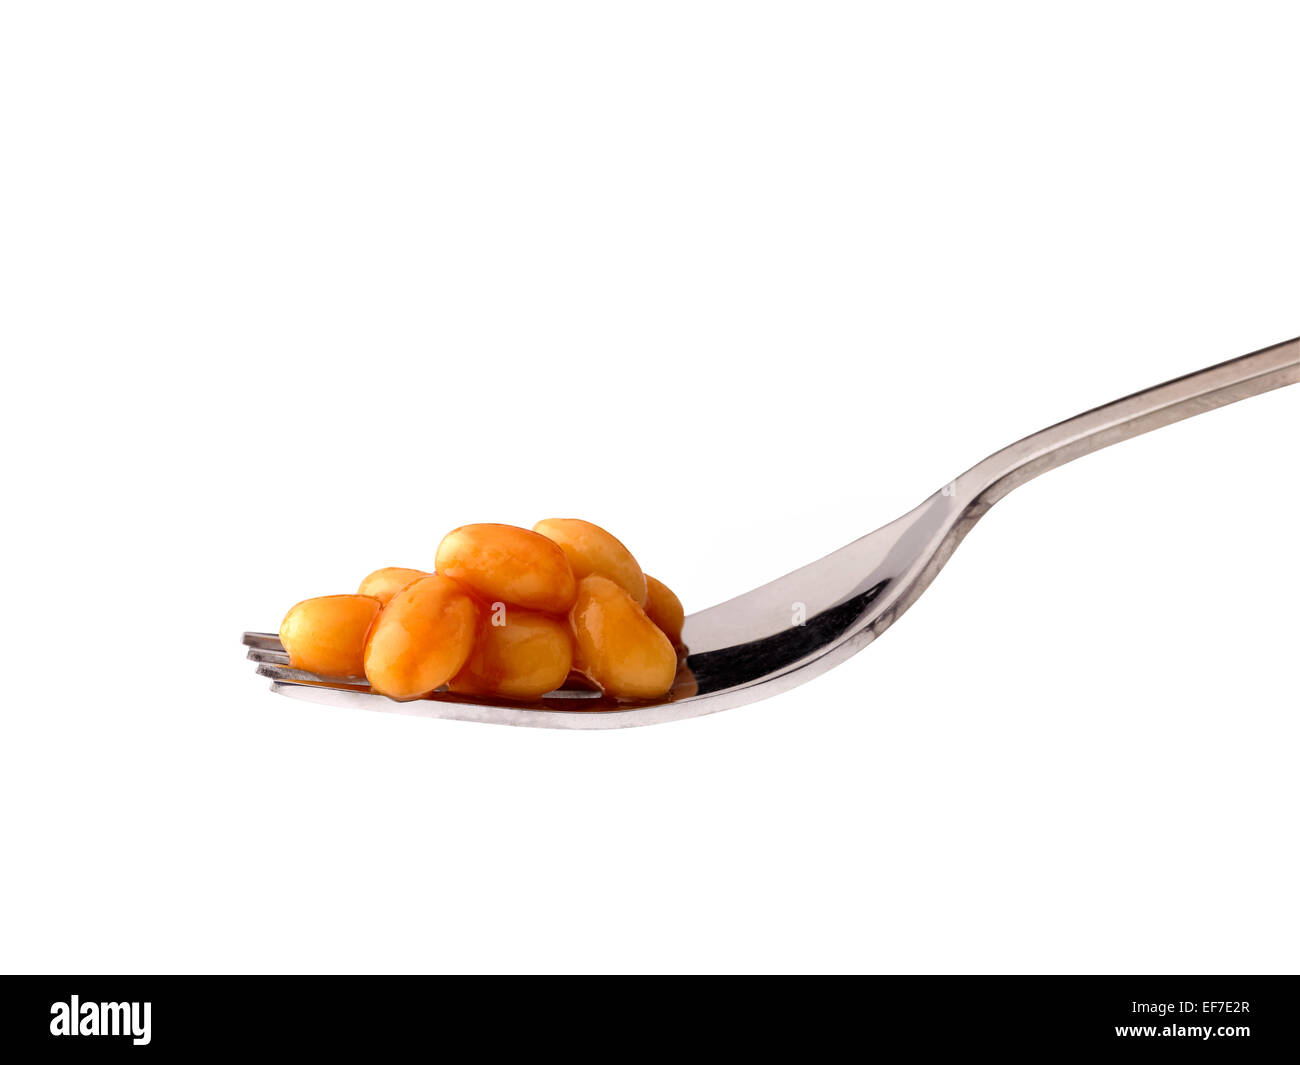 baked beans on fork Stock Photo